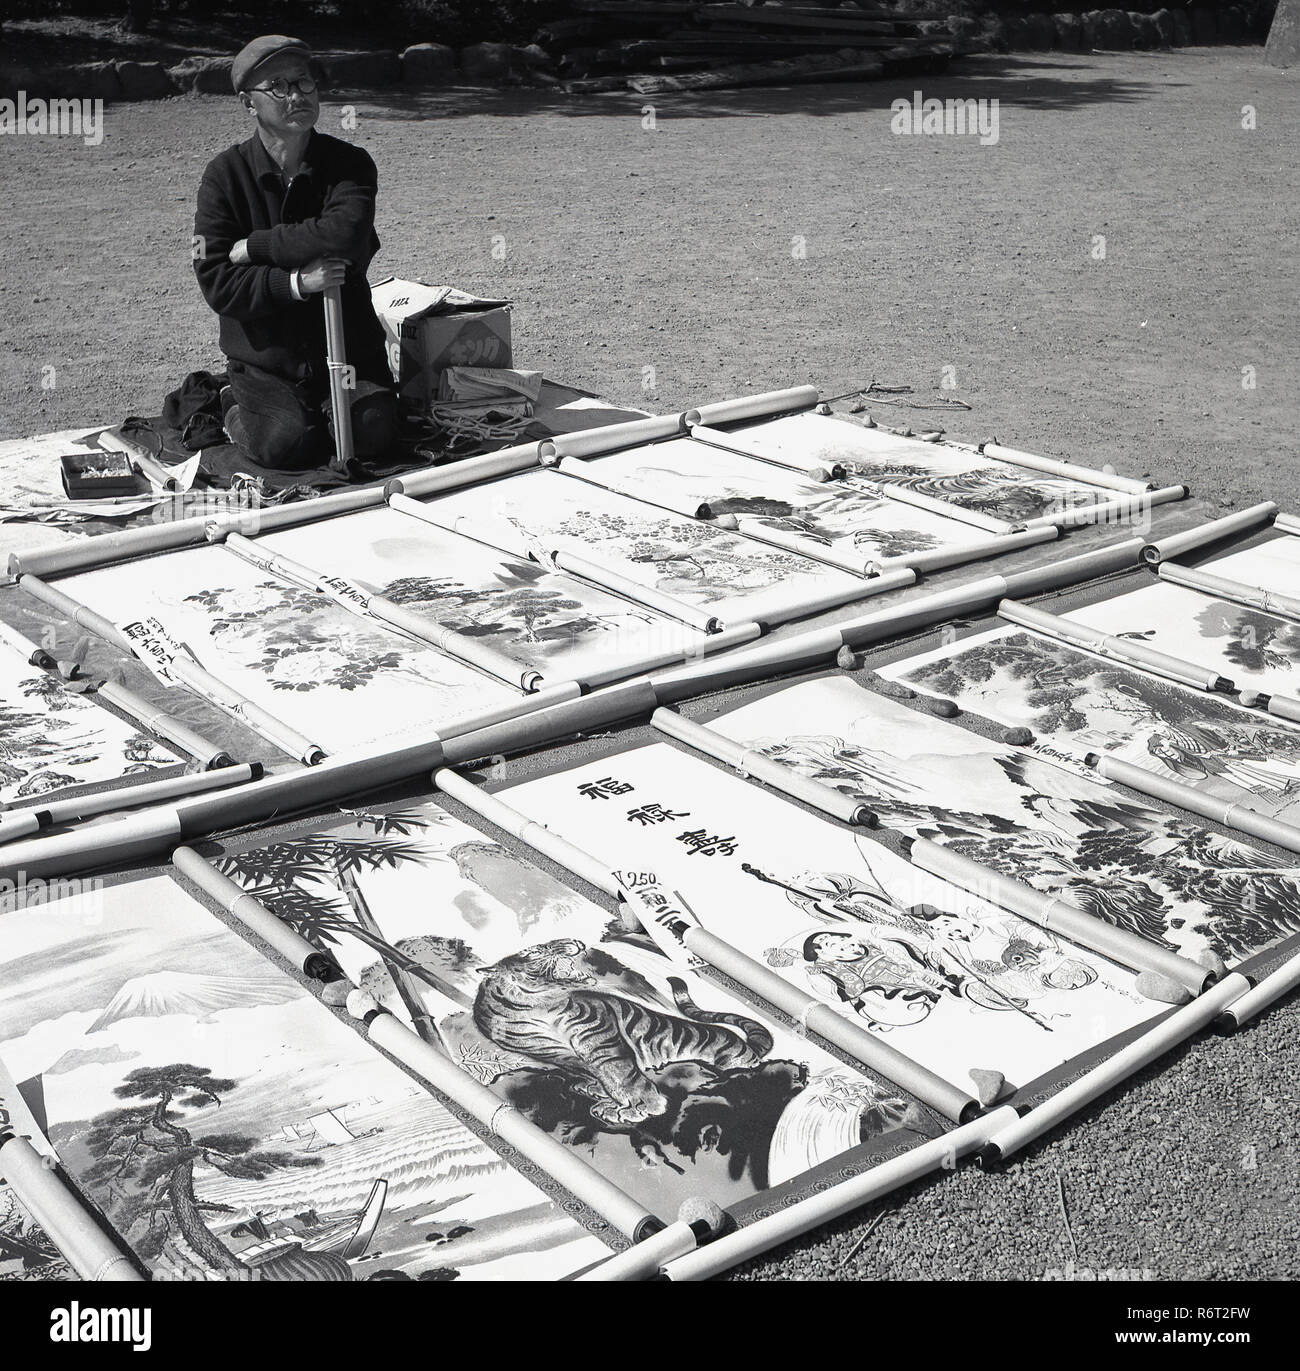 1960, históricos, un artista japonés fuera rodillazos en el suelo con sus obras - colgantes - impresiones de desplazamiento en la pantalla. Foto de stock